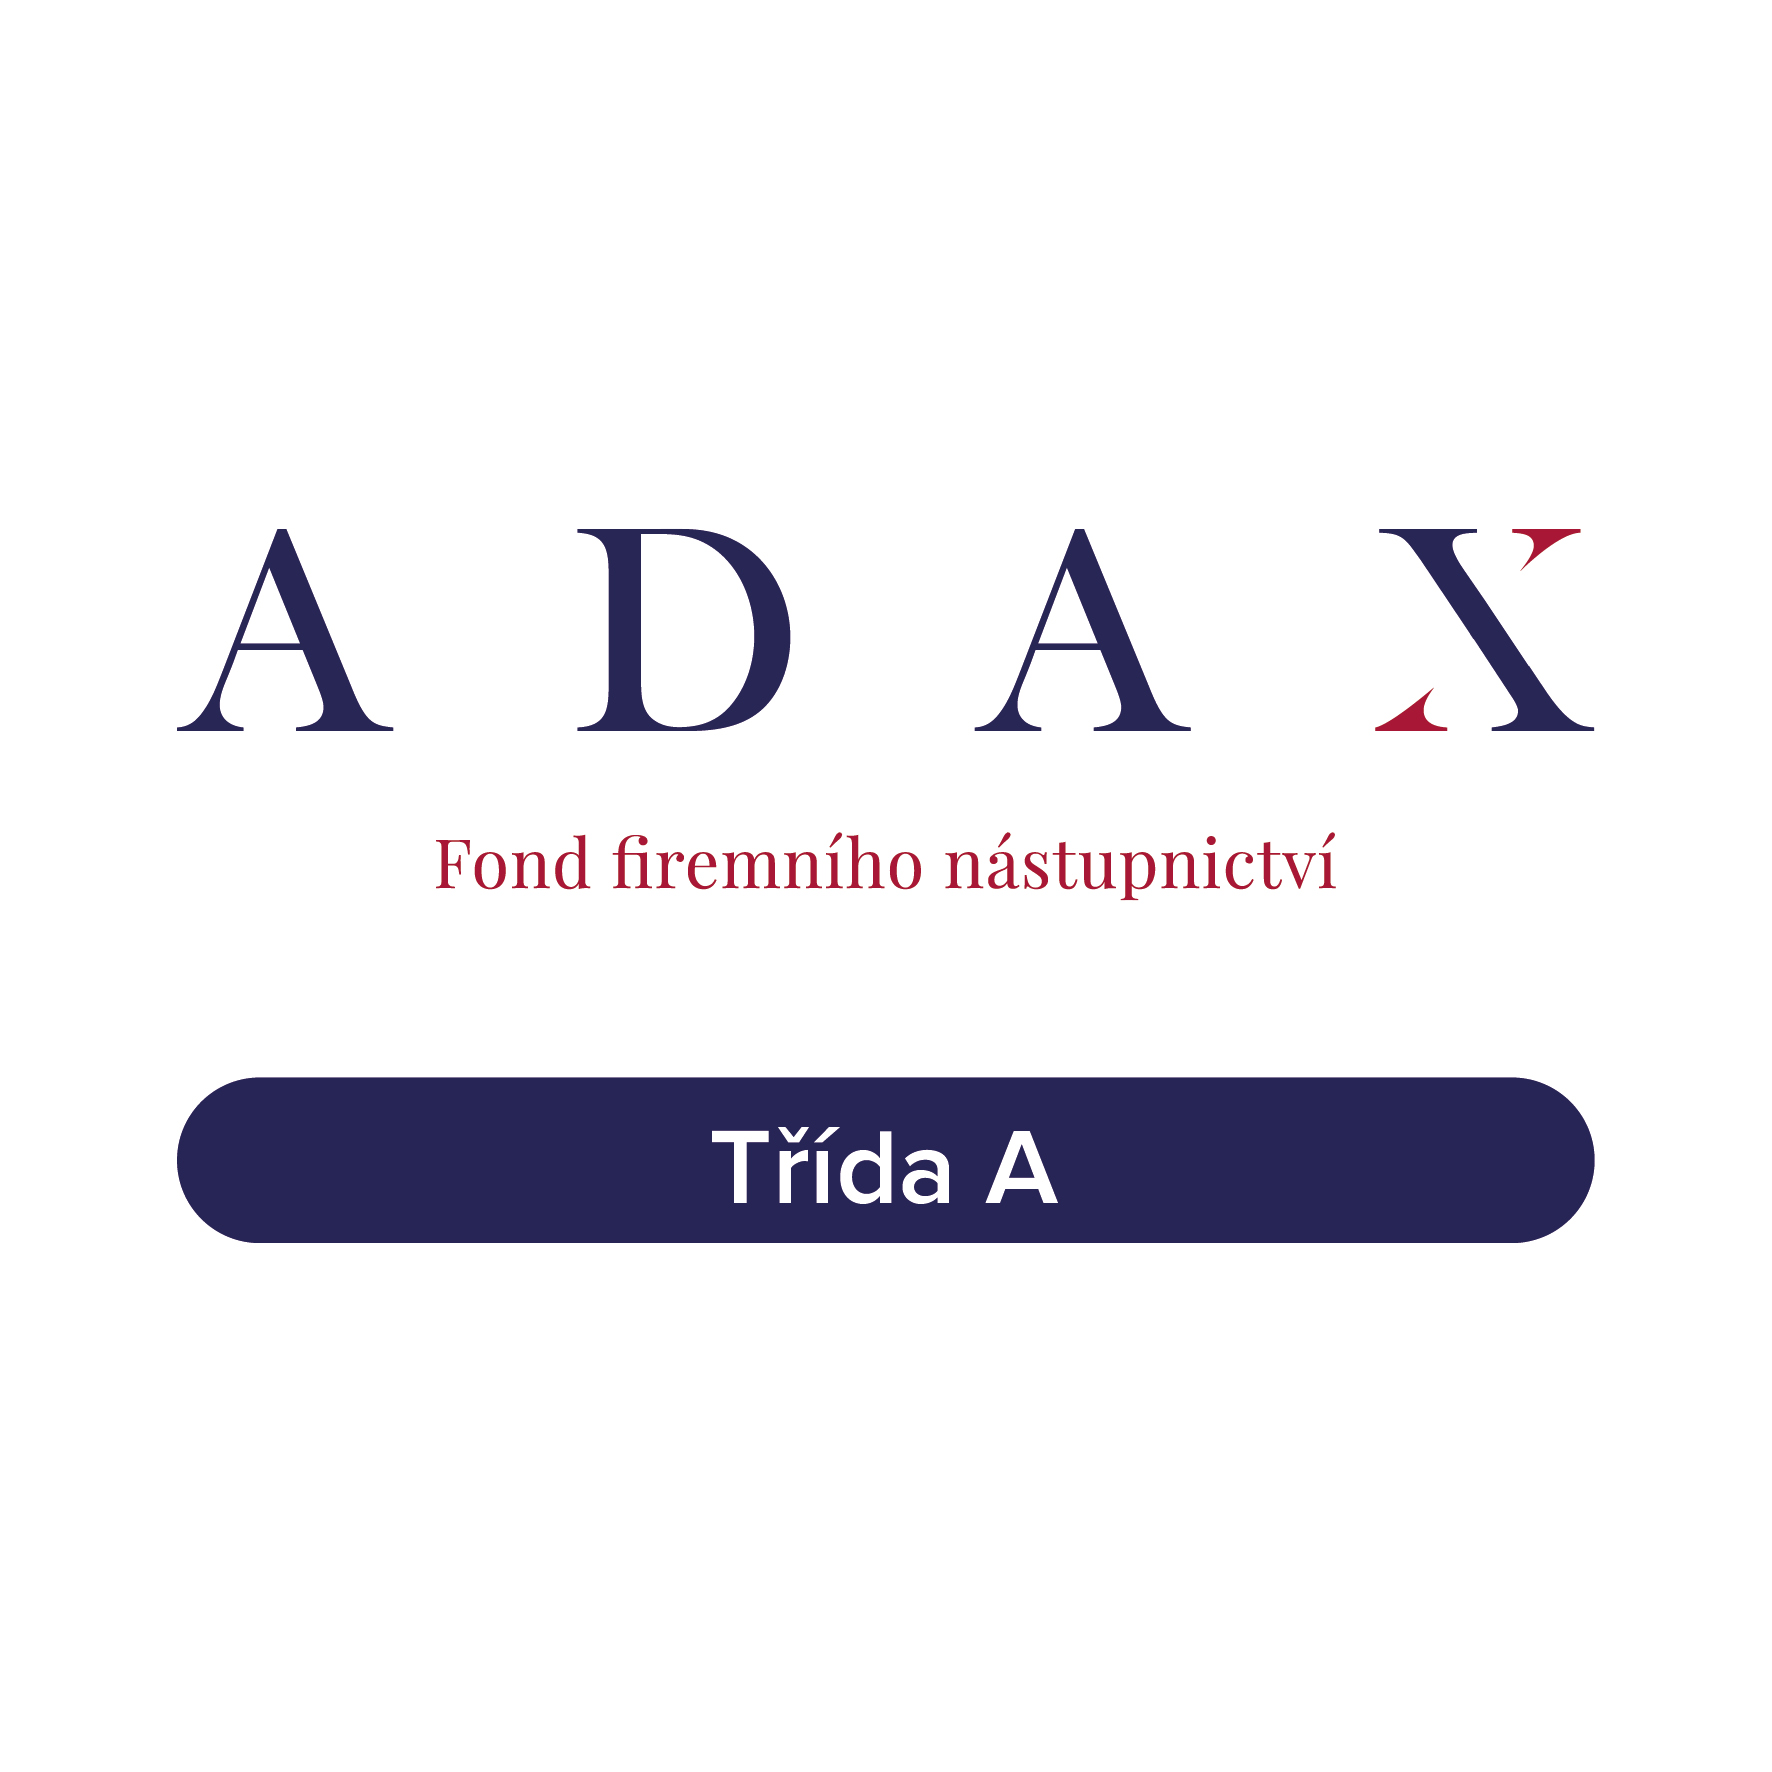 ADAX DAX Fond firemního nástupnictví, podfond 1 - třída C SICAV a.s.  - třída A